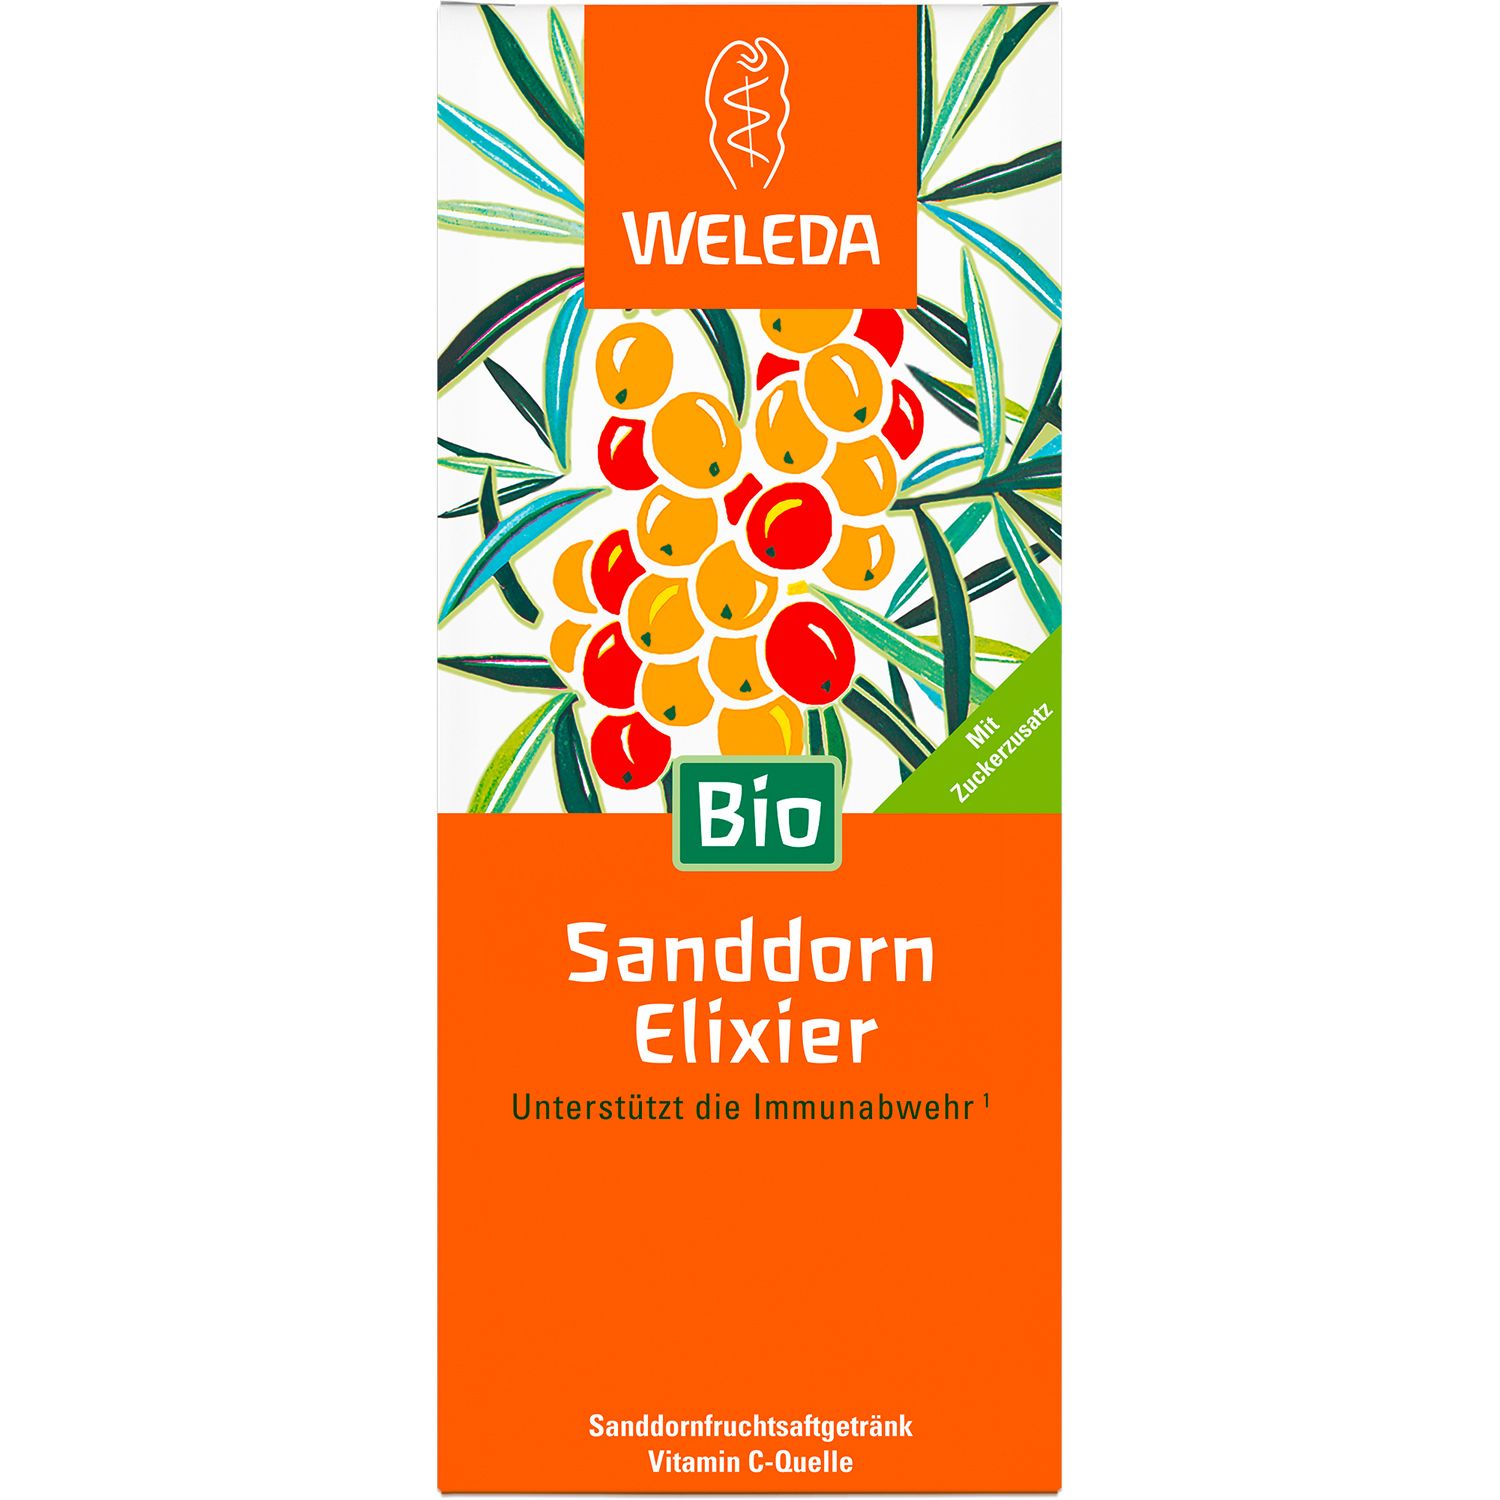 Weleda Sanddorn-Elixier Bio - unterstützt mit Vitamin C die Immunabwehr, hilft bei  Müdigkeit